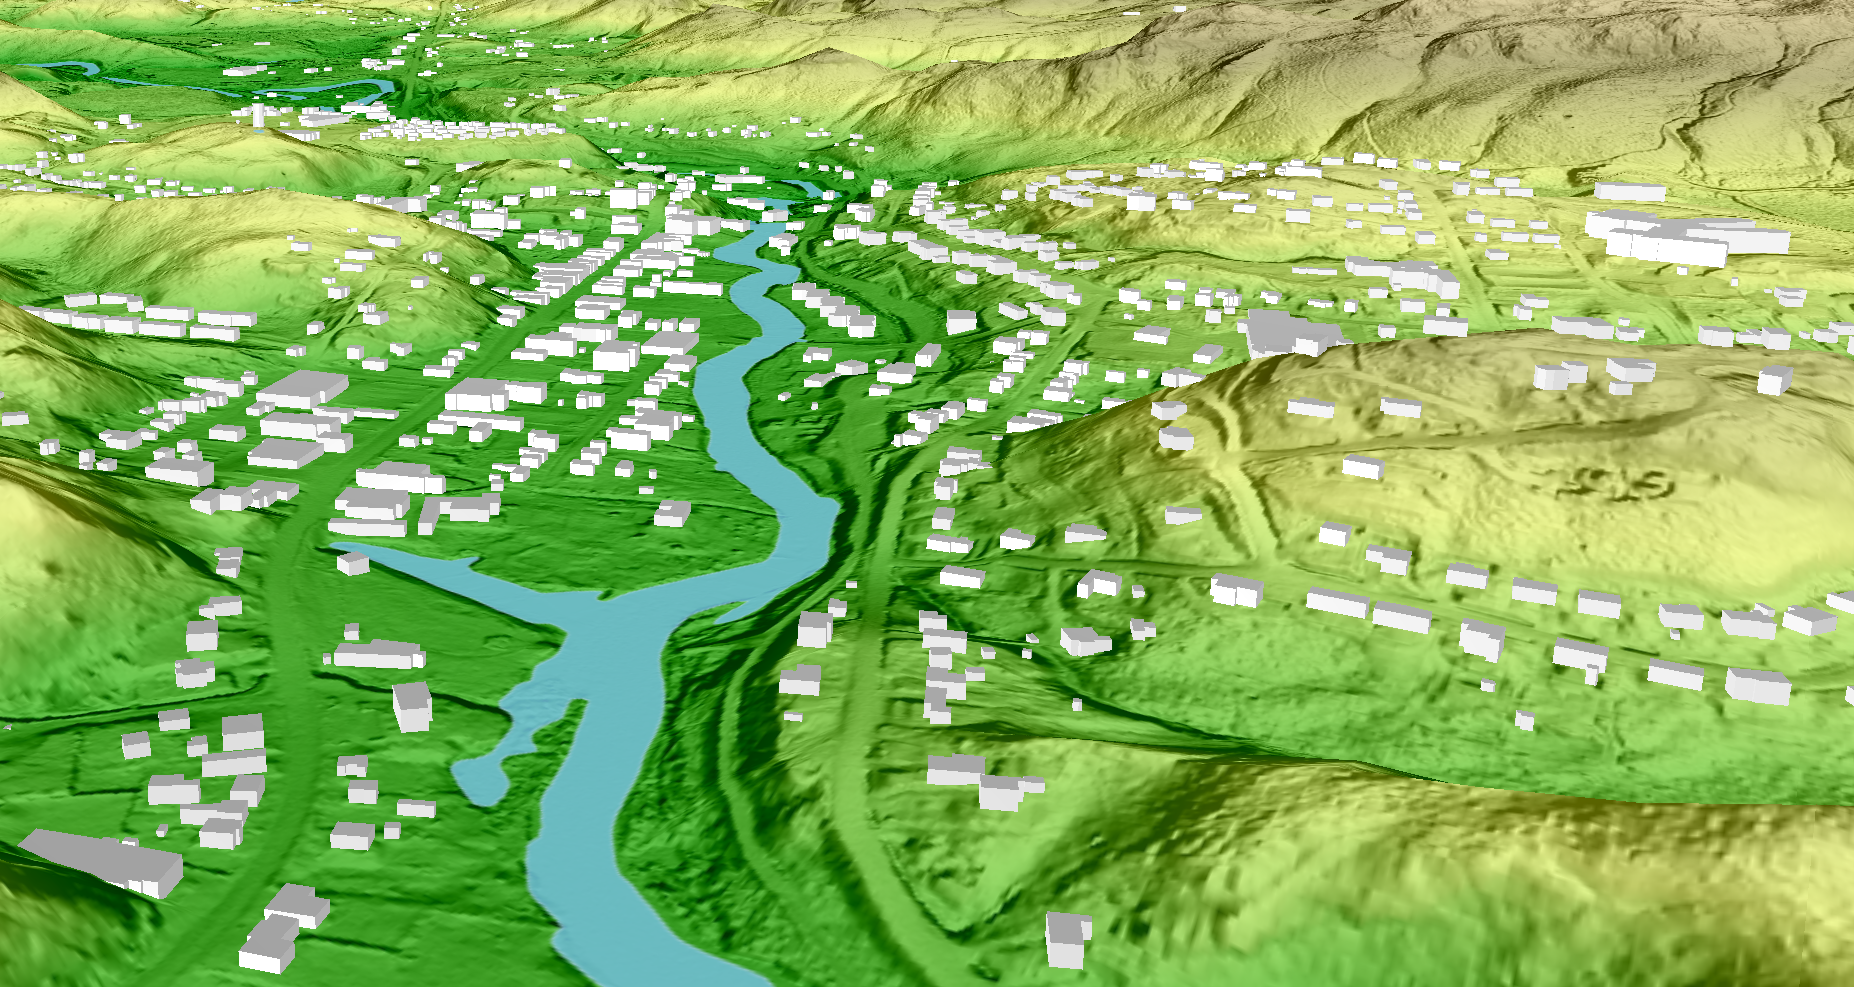 Représentation 3D d'un territoire avec bâtiments, des routes, une rivière parmi un relief changeant.